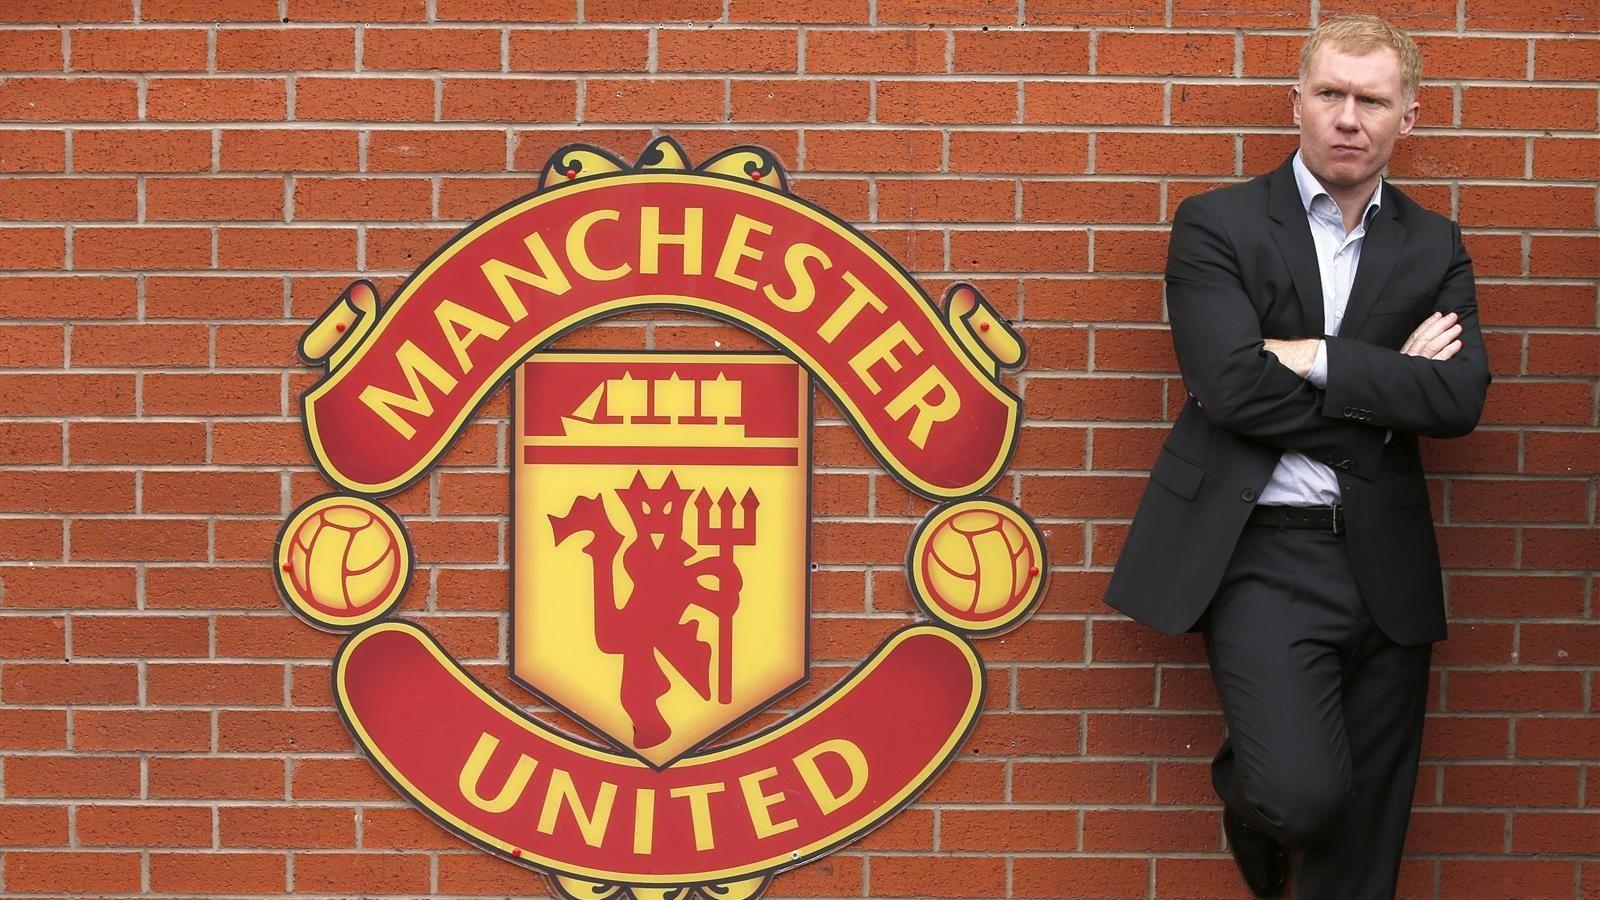 Paul Scholes: Manchester United are 'miserable' under Louis van